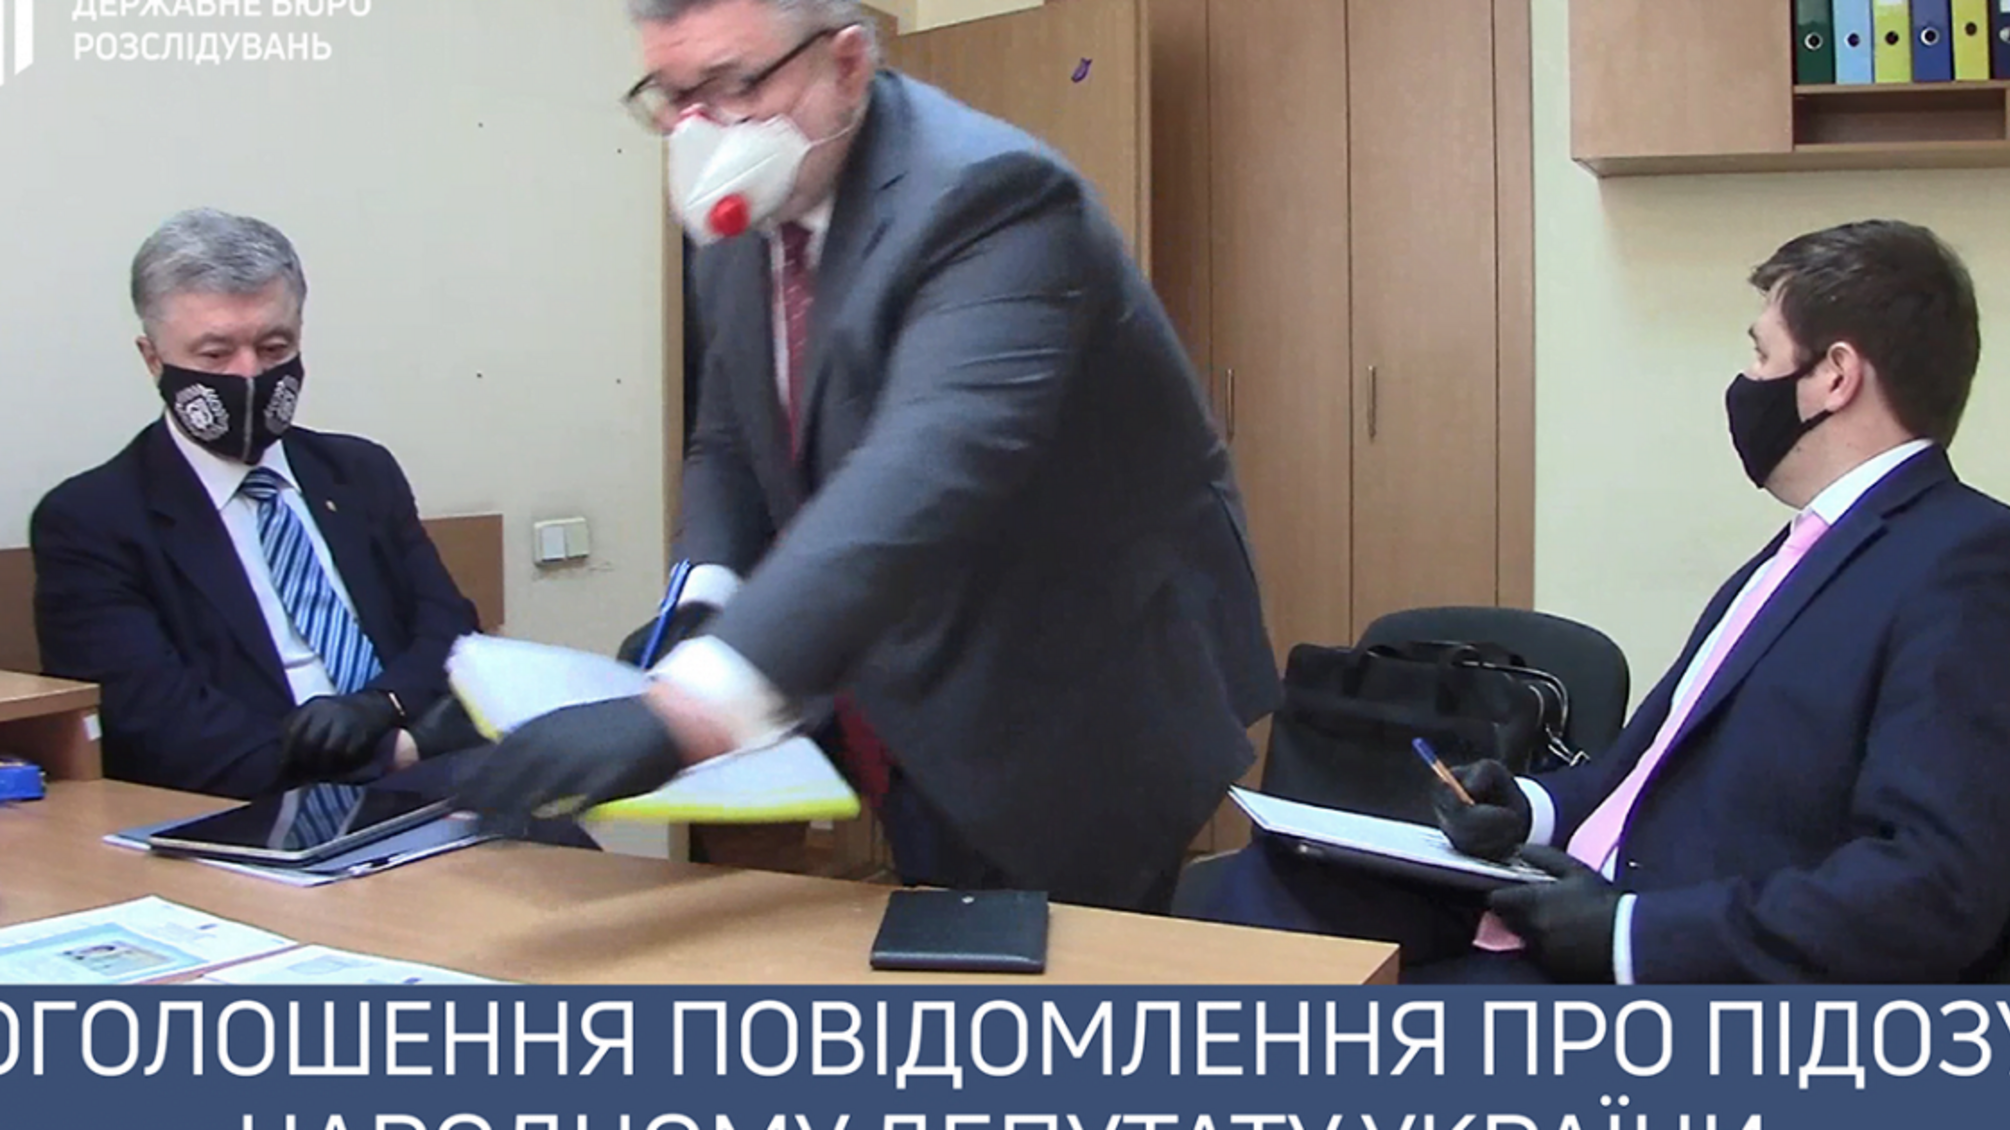 Оголошення повідомлення про підозру народному депутату України (ВІДЕО)